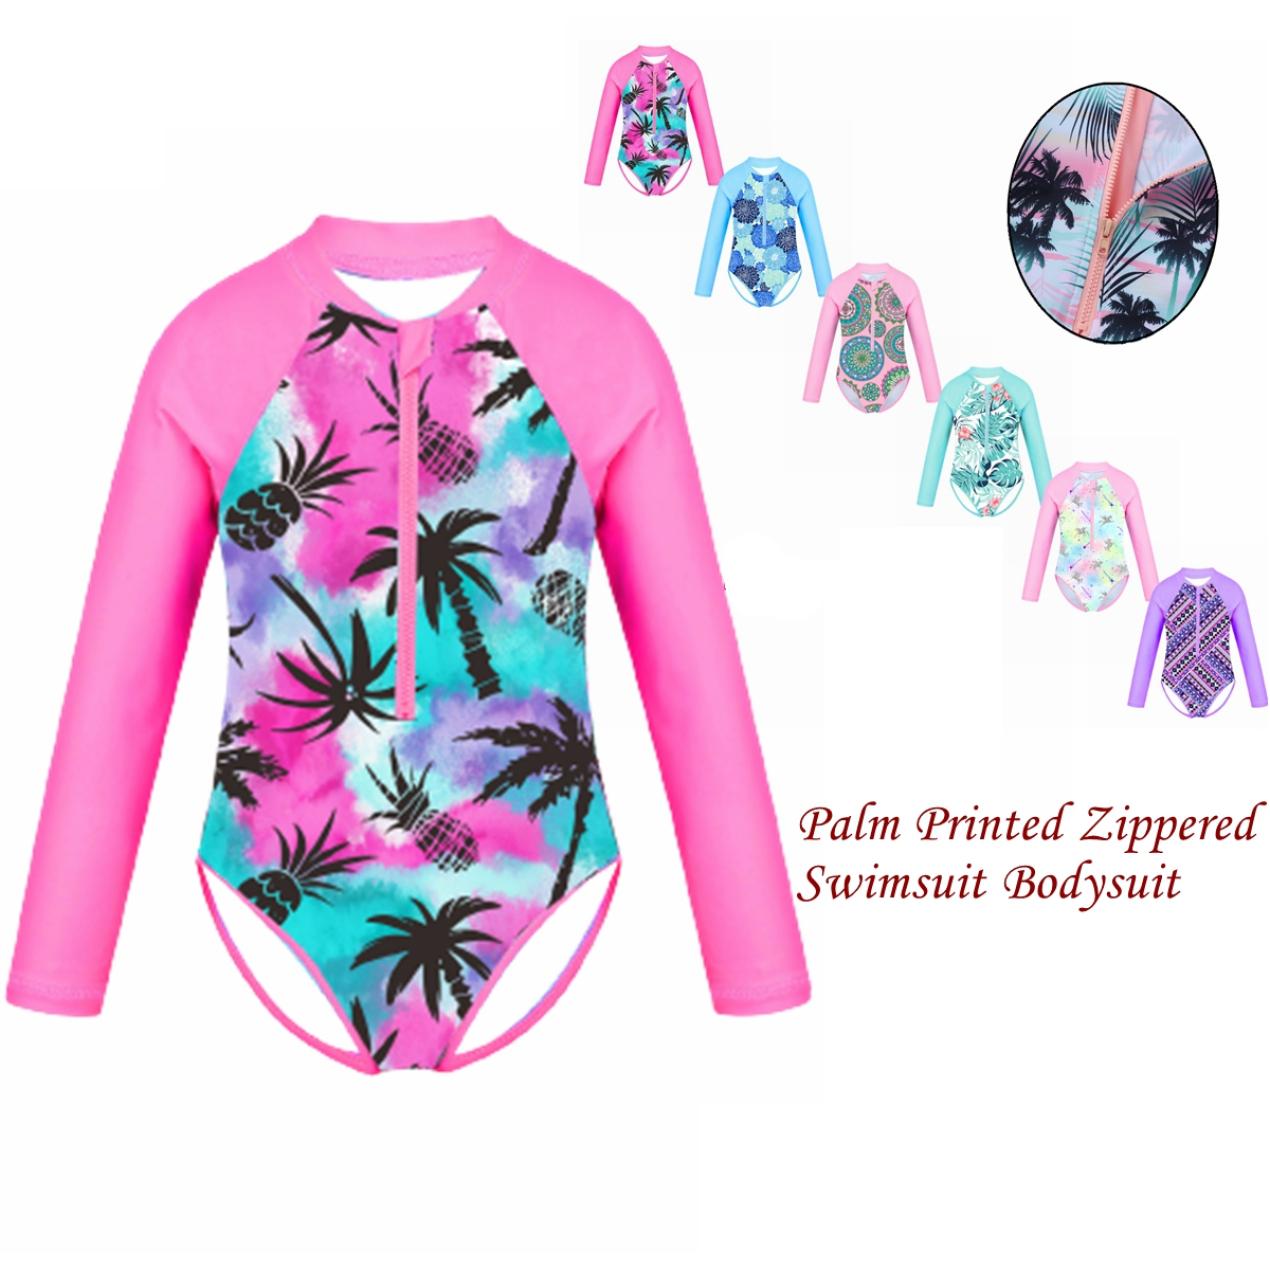 IEFiEL Kids Girls Swimsuit Long Sleeve Palm Printed Zippered Swimwear Bathing Suit Rash Guard Bodysuit Beach Wear